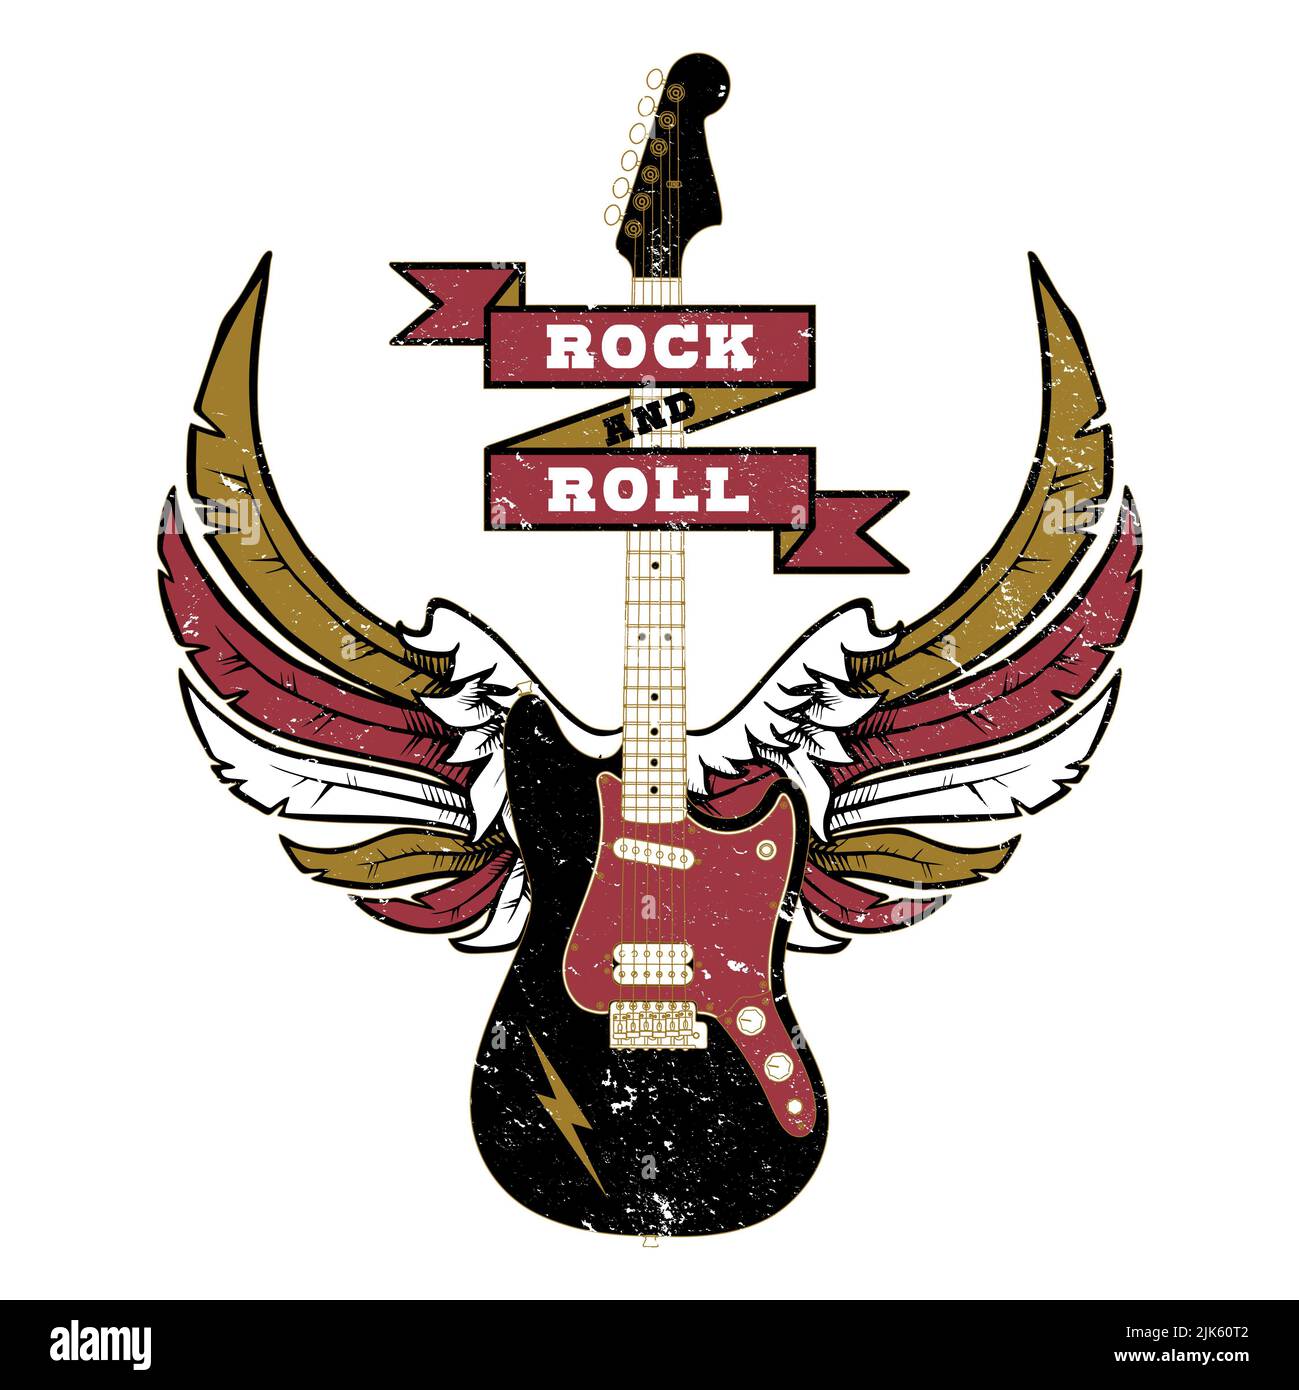 Geflügelte Gitarre - Rock And Roll - Rockmusik Graphic Stockfoto